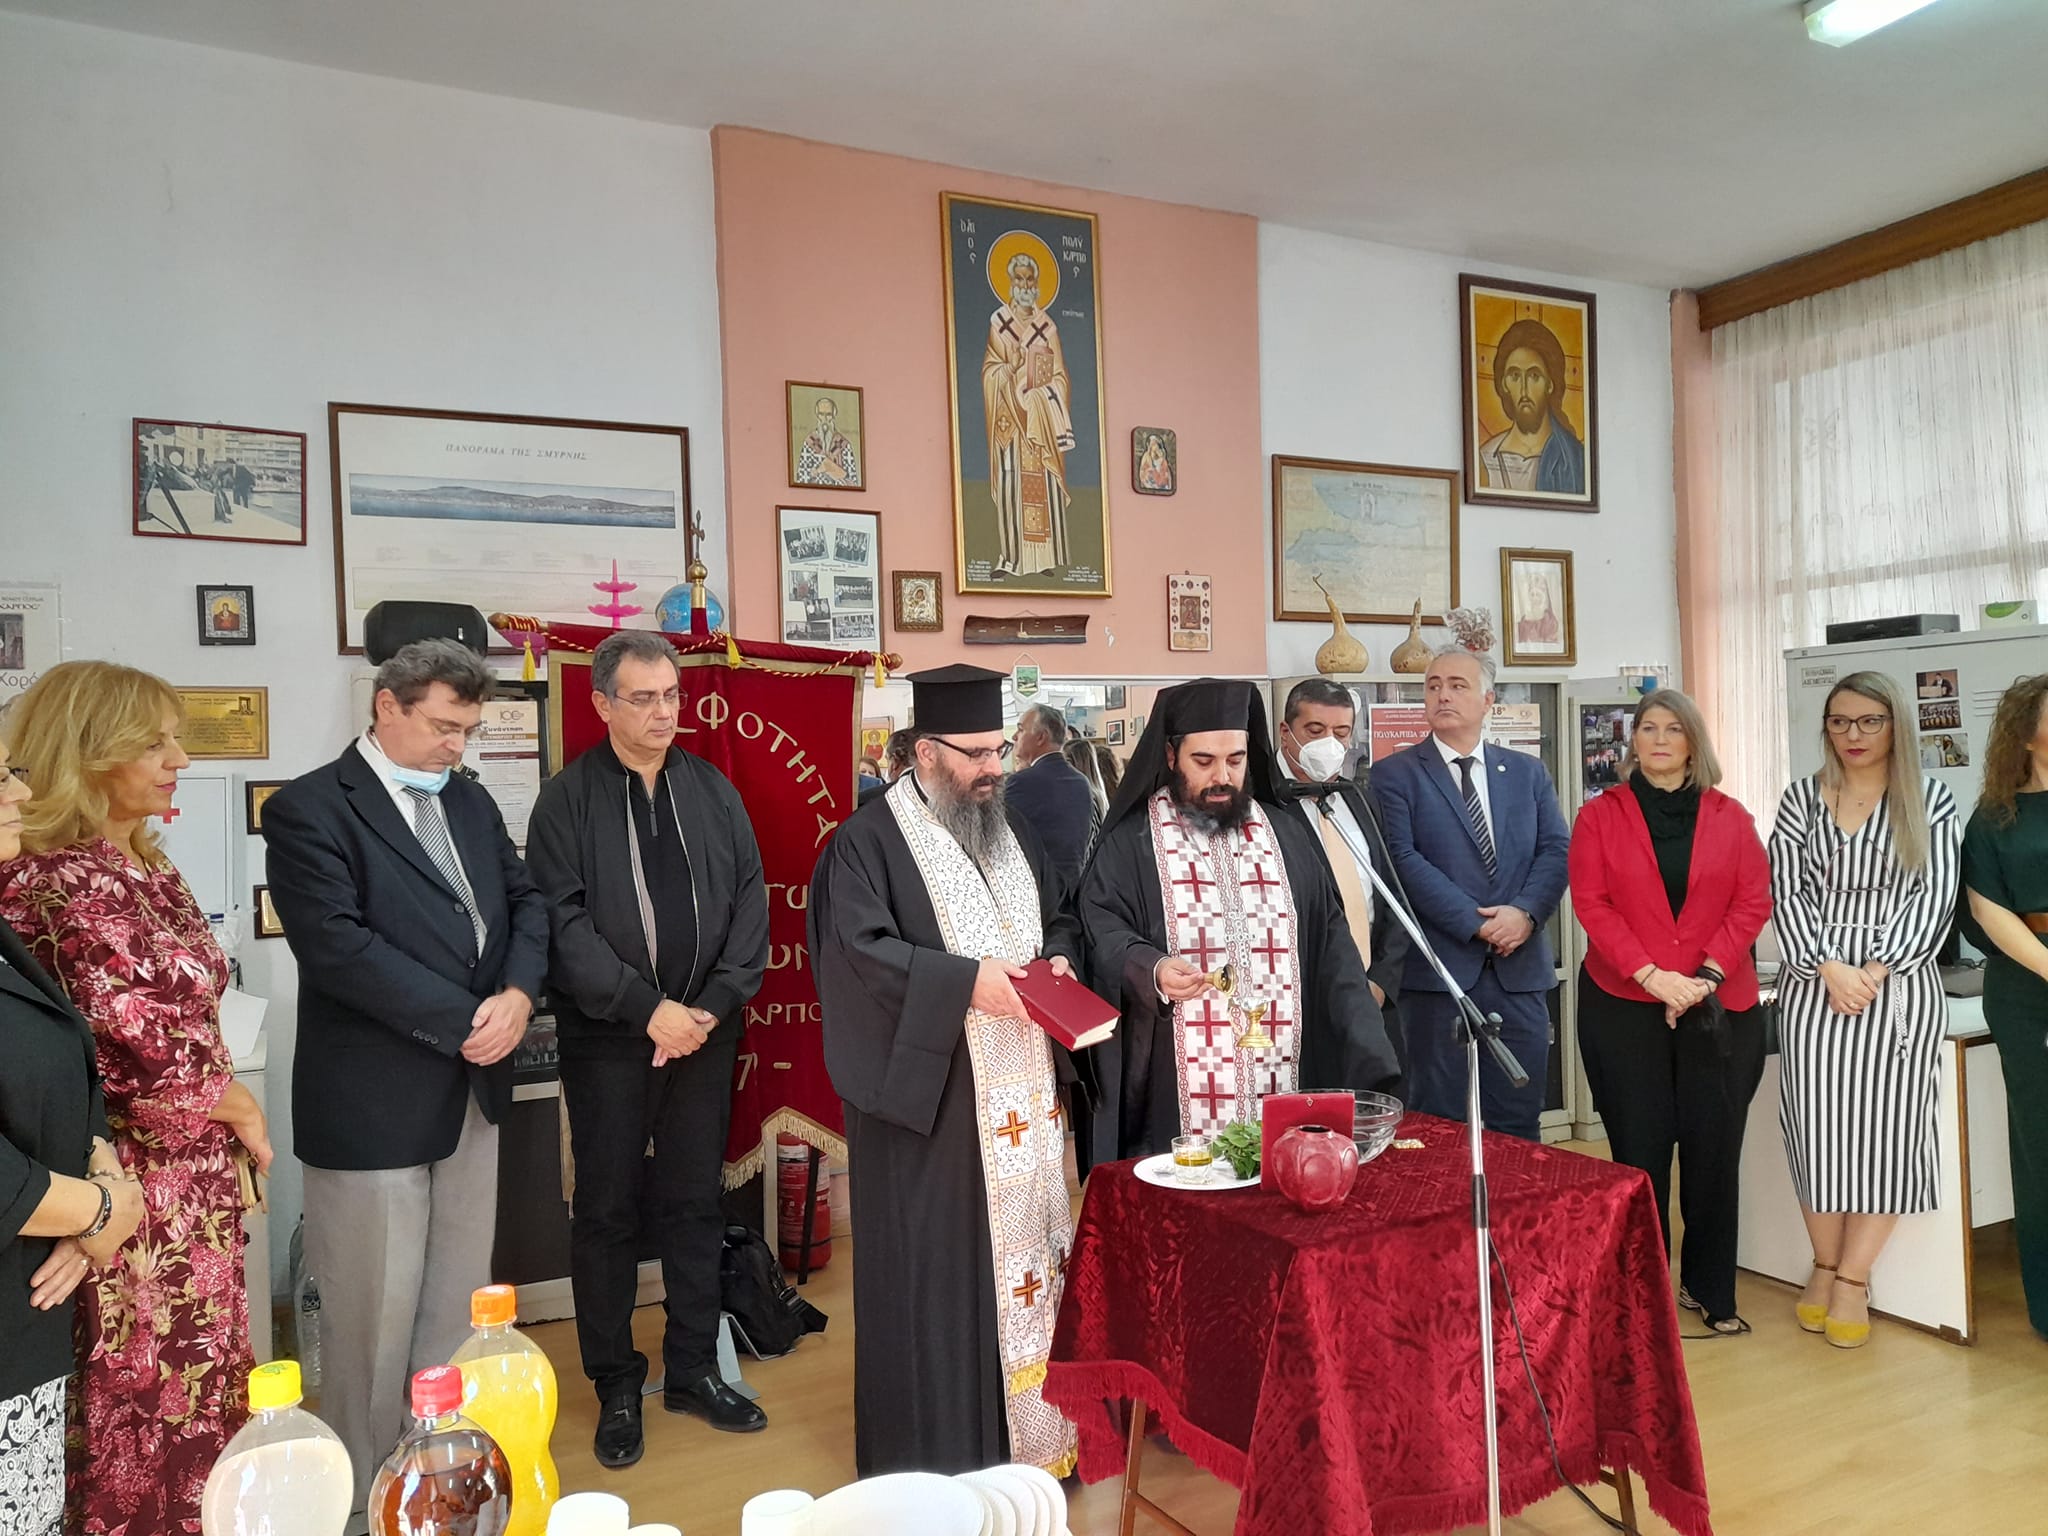 Σέρρες: Αγιασμός σε μια χρονιά μνήμης για την Αδελφότητα Μικρασιατών «Ο Άγιος Πολύκαρπος»